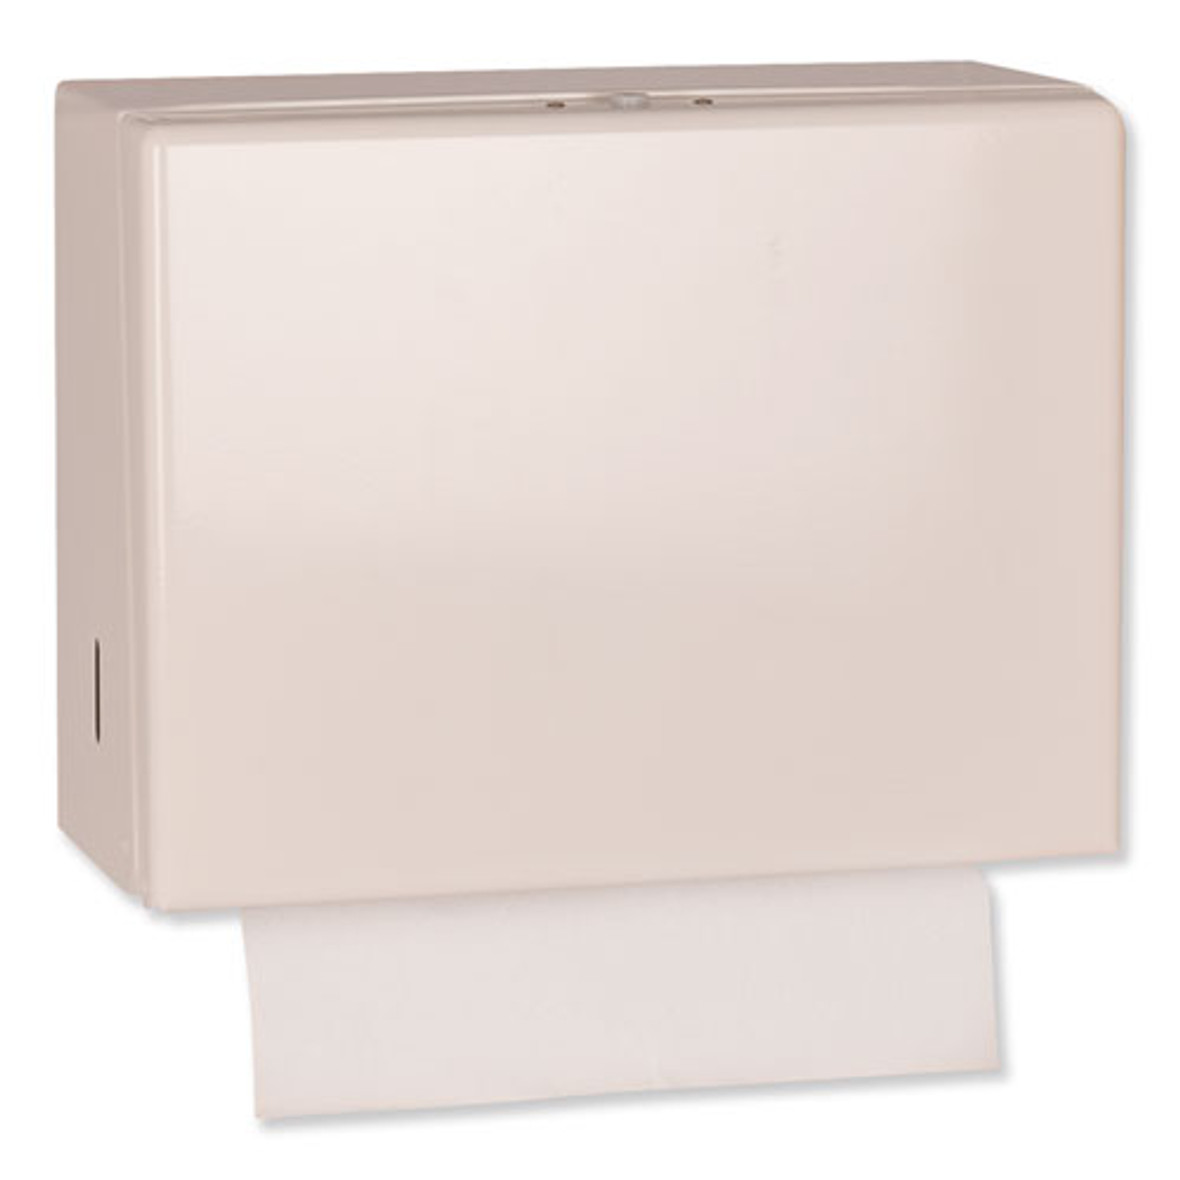 Tork® Singlefold Hand Towel Dispenser, 11.75 x 5.75 x 9.25, White